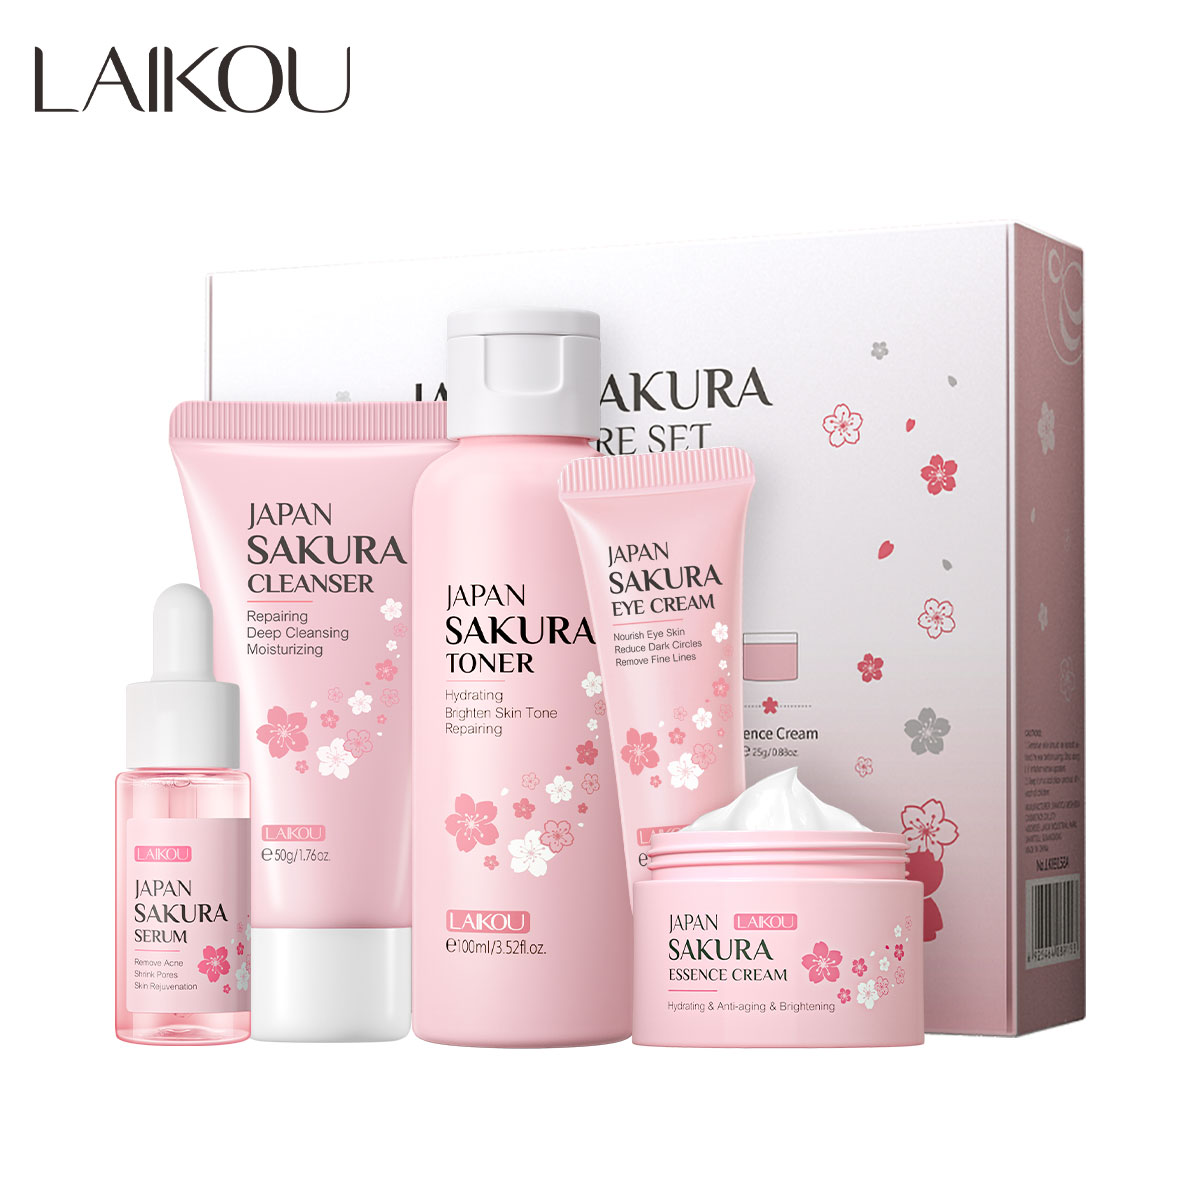 Bộ 5 sản phẩm chăm sóc làm trắng da Laikou chiết xuất hoa anh đào Nhật Bản